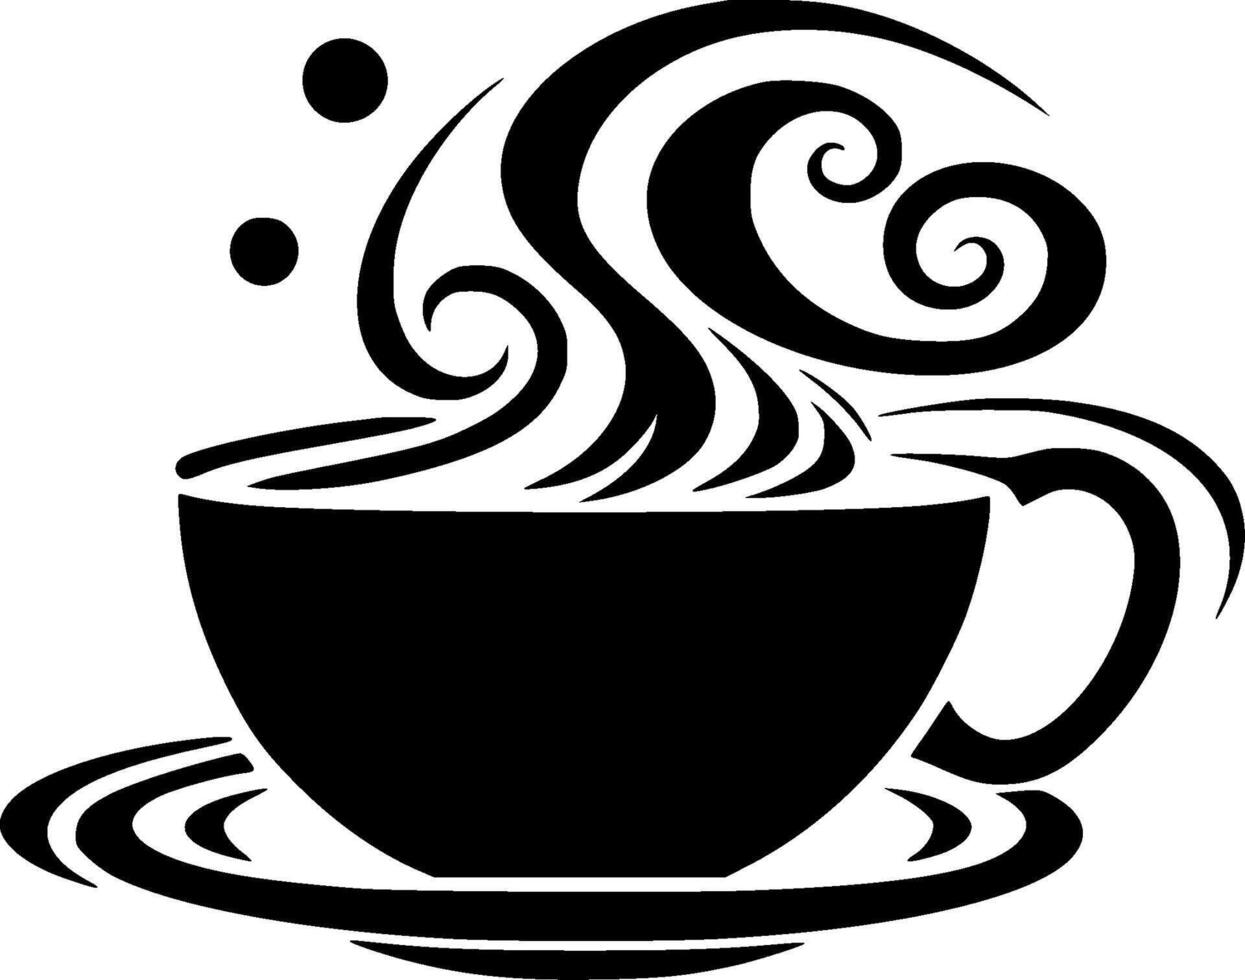 kaffe, minimalistisk och enkel silhuett - vektor illustration